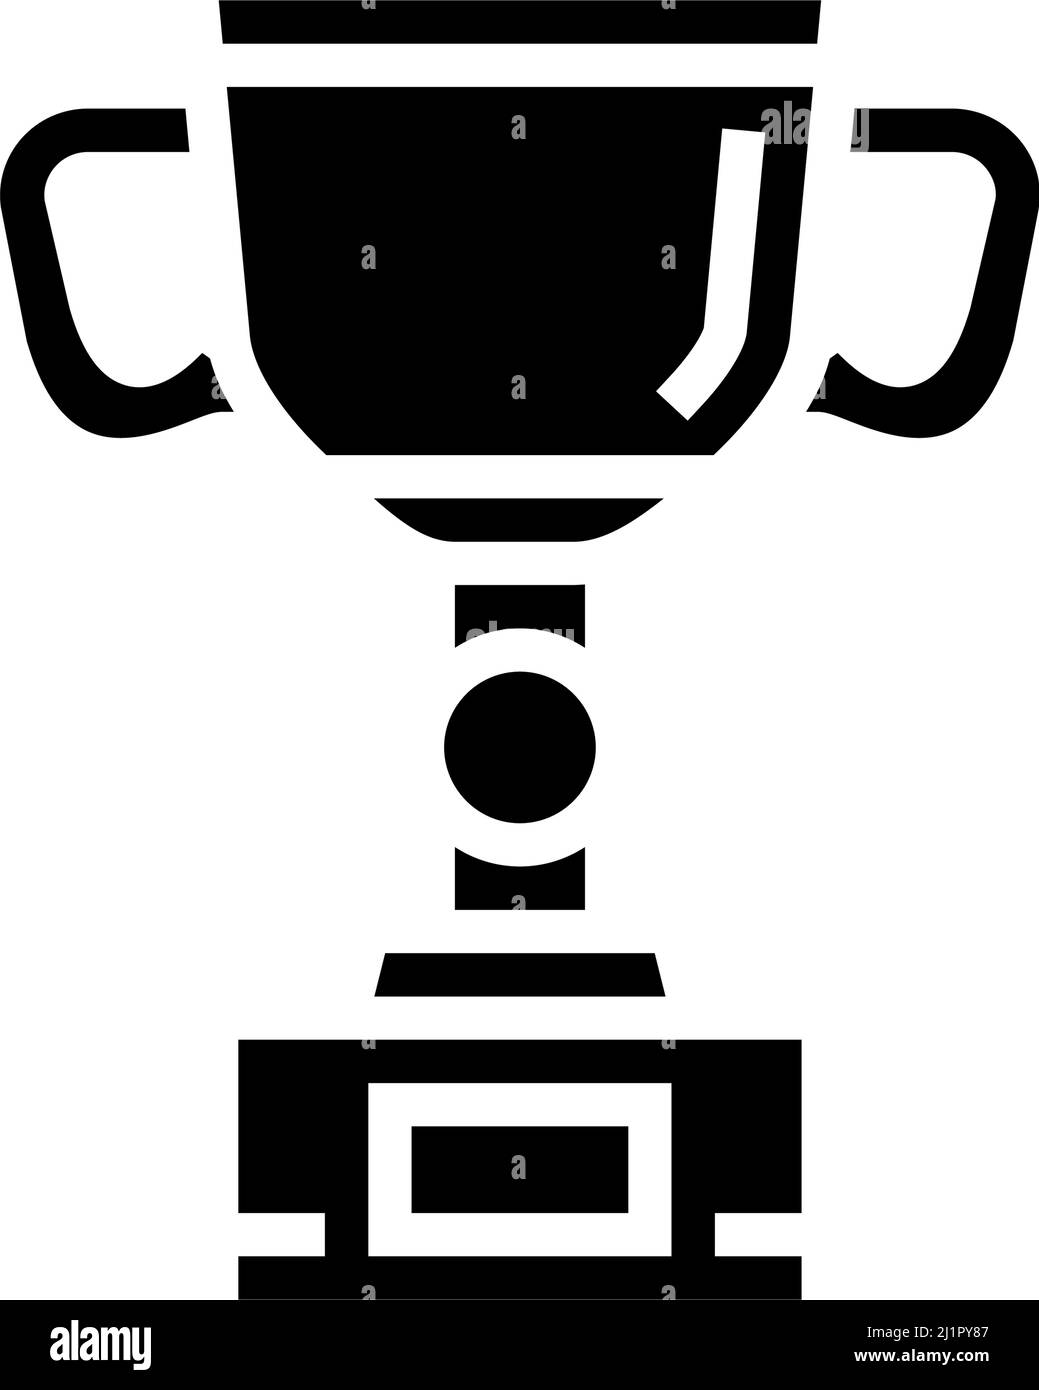 cup golden award glyph icon vector illustration Stock Vector